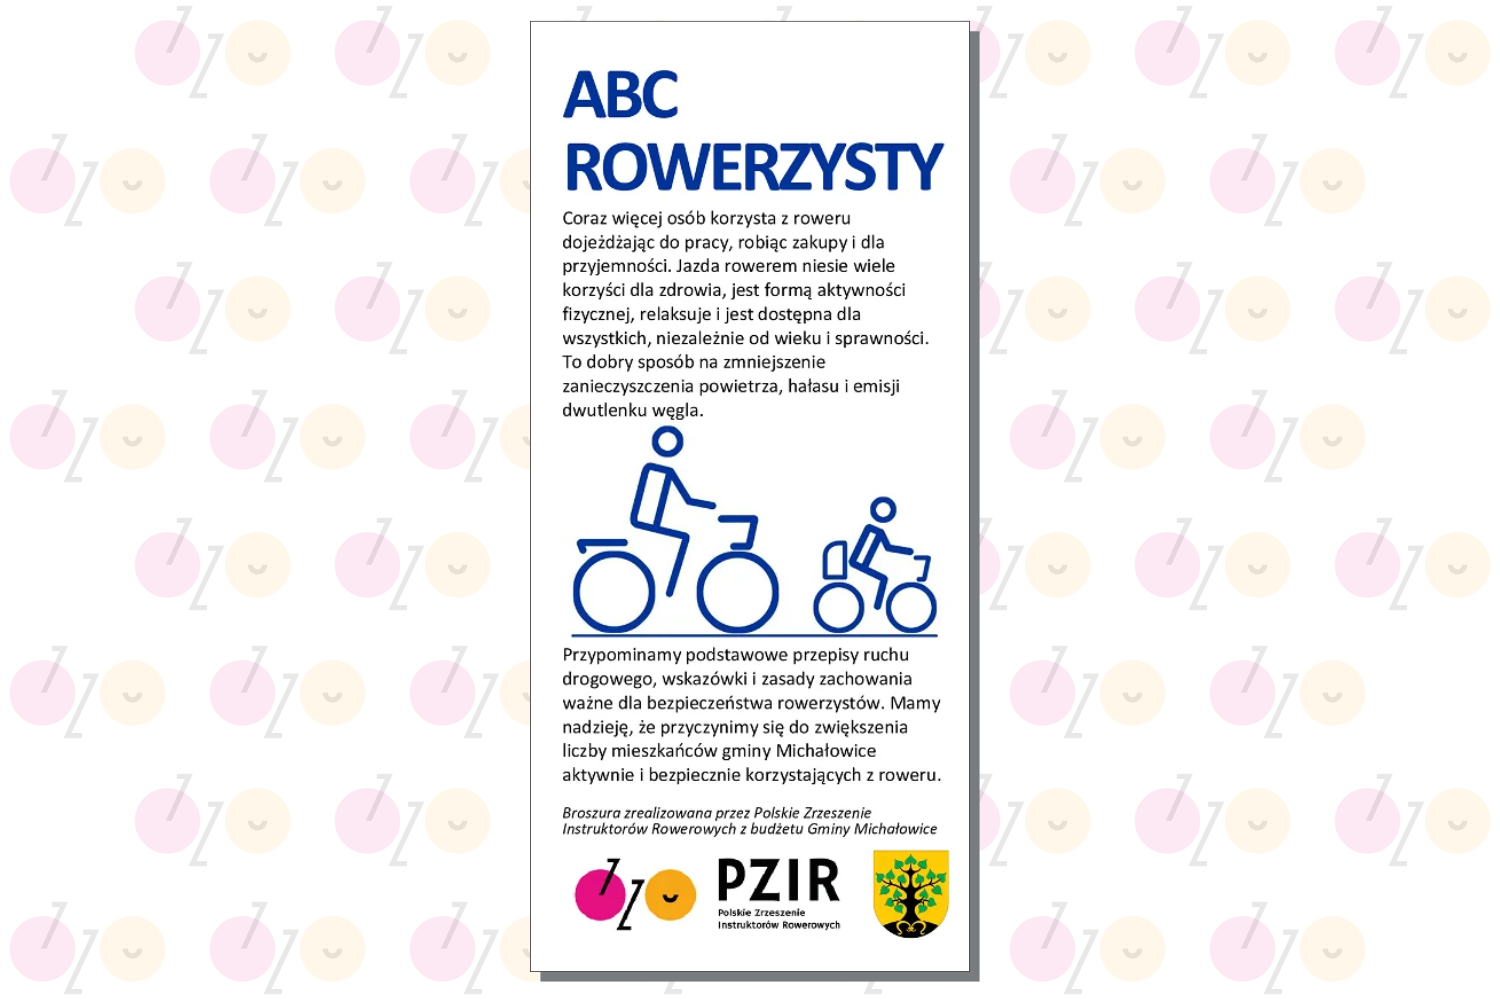 ABC rowerzysty